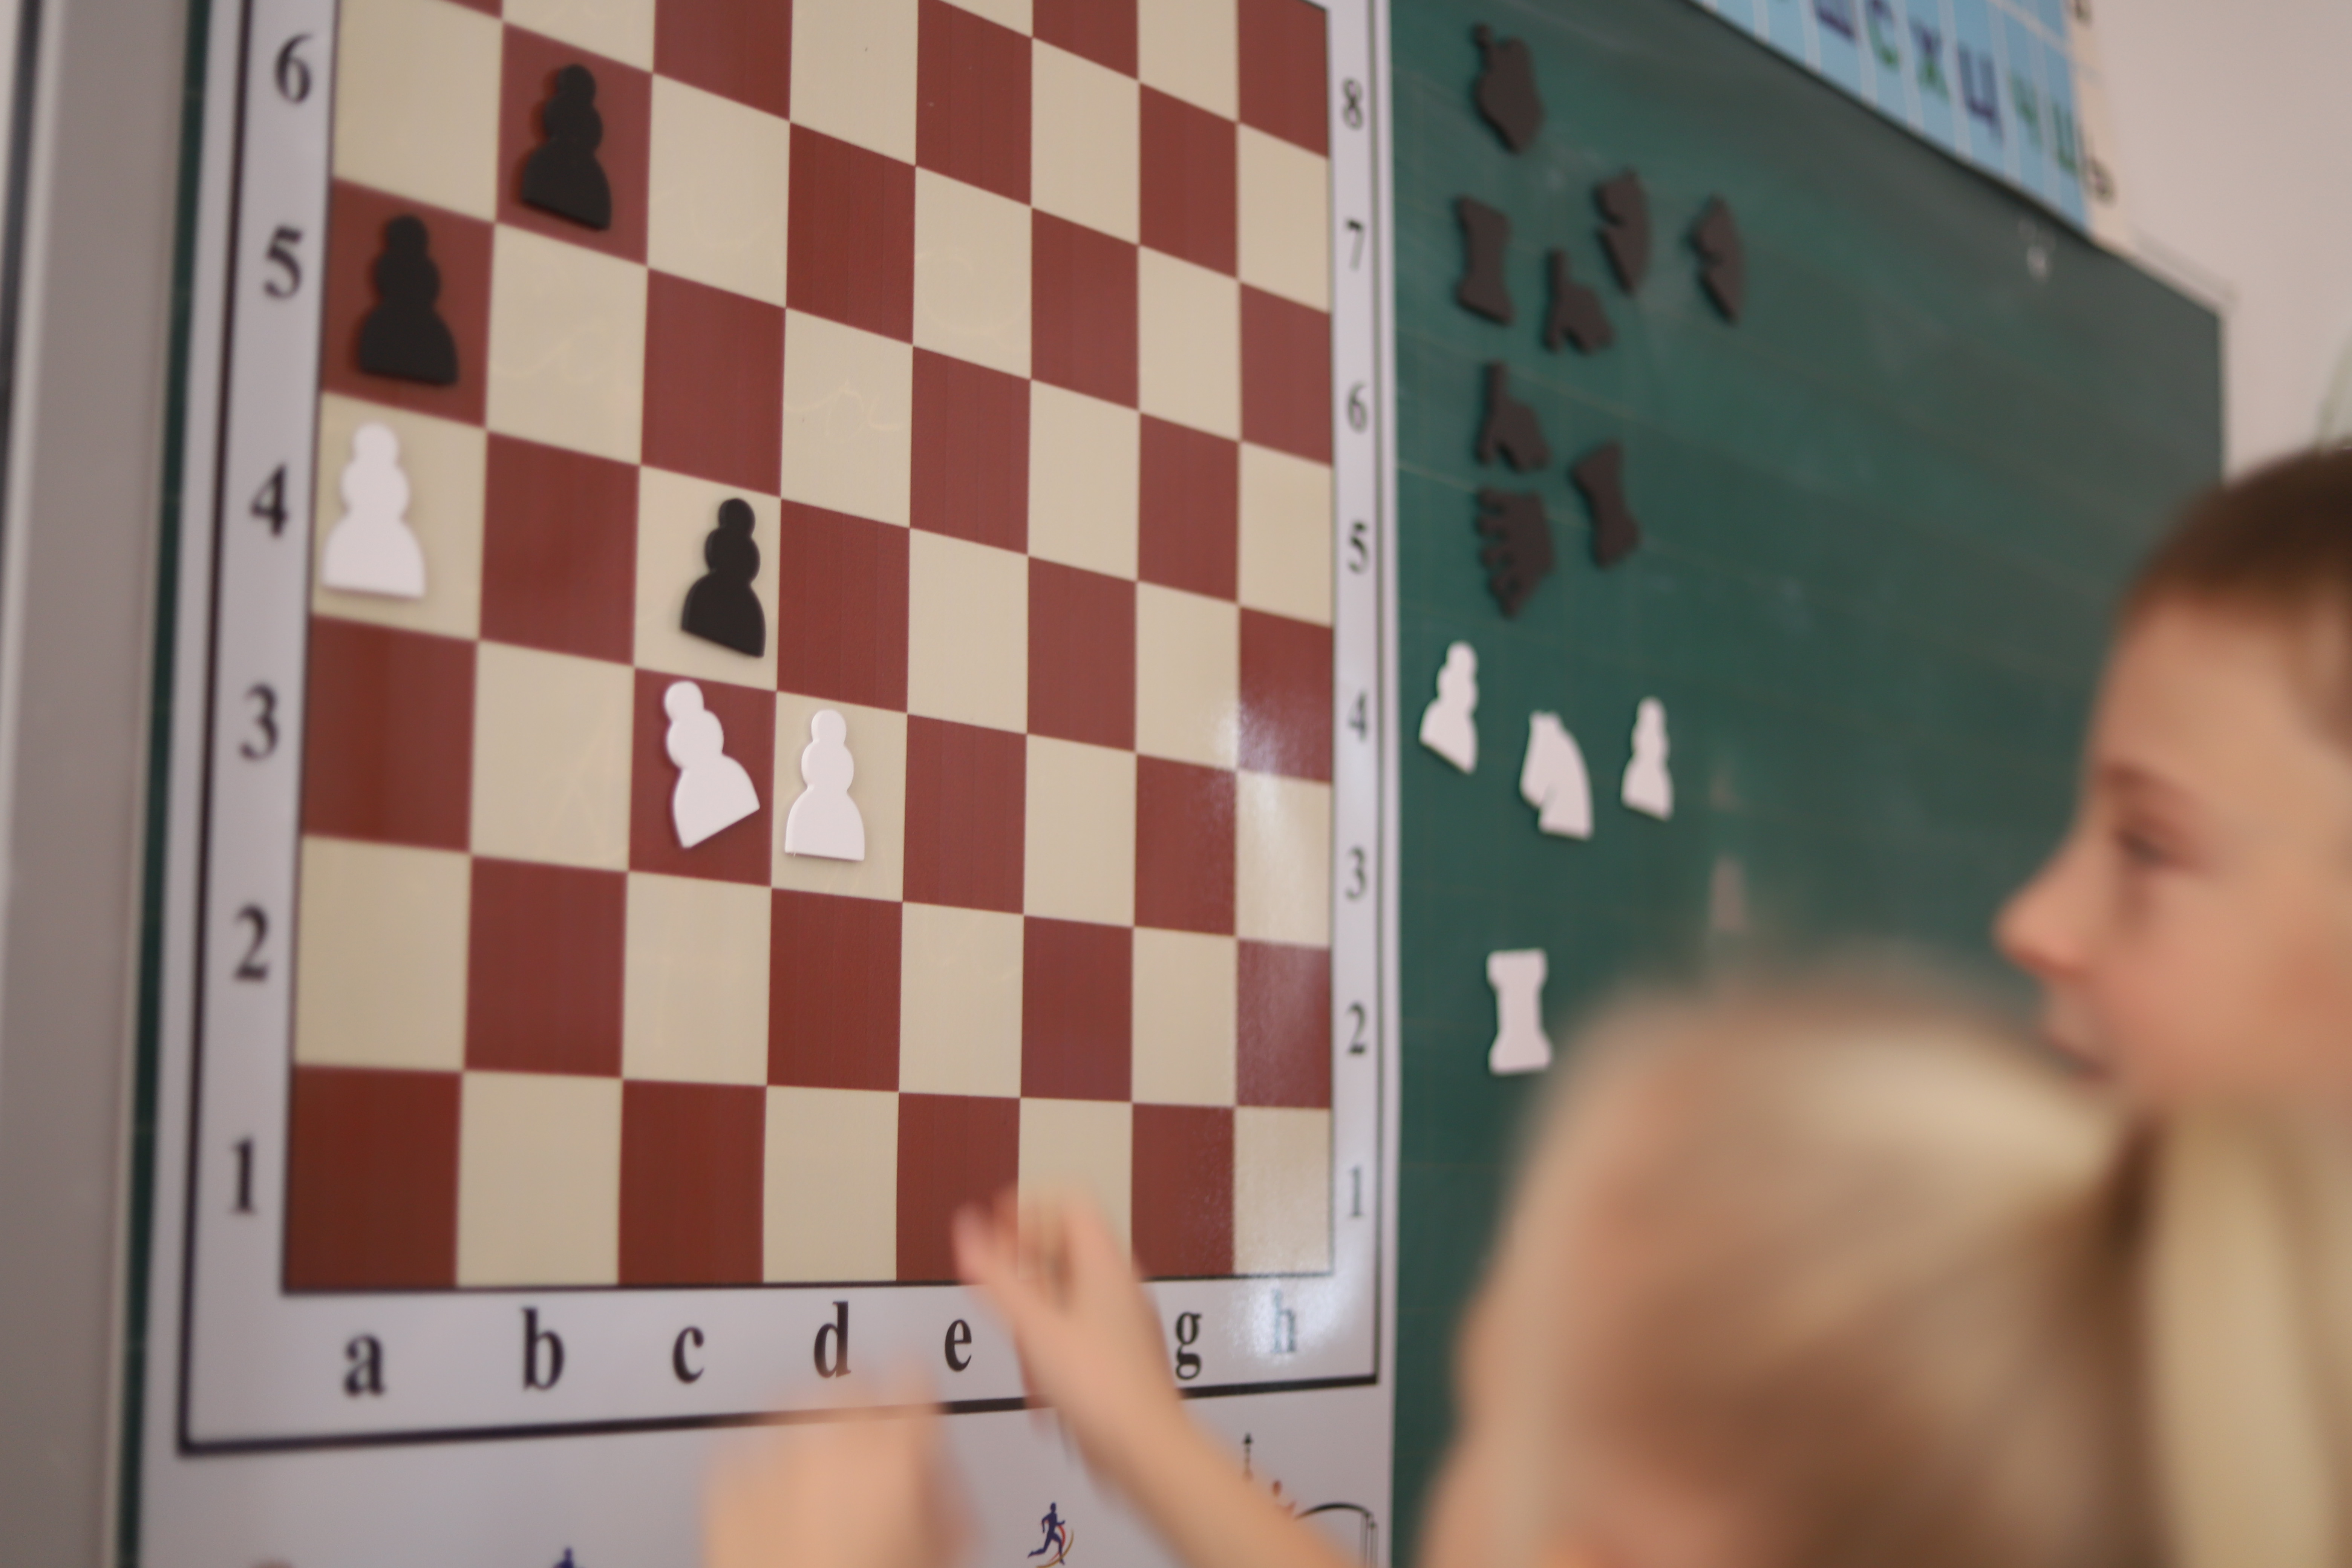 Турнир по шашкам среди обучающихся начальной школы.